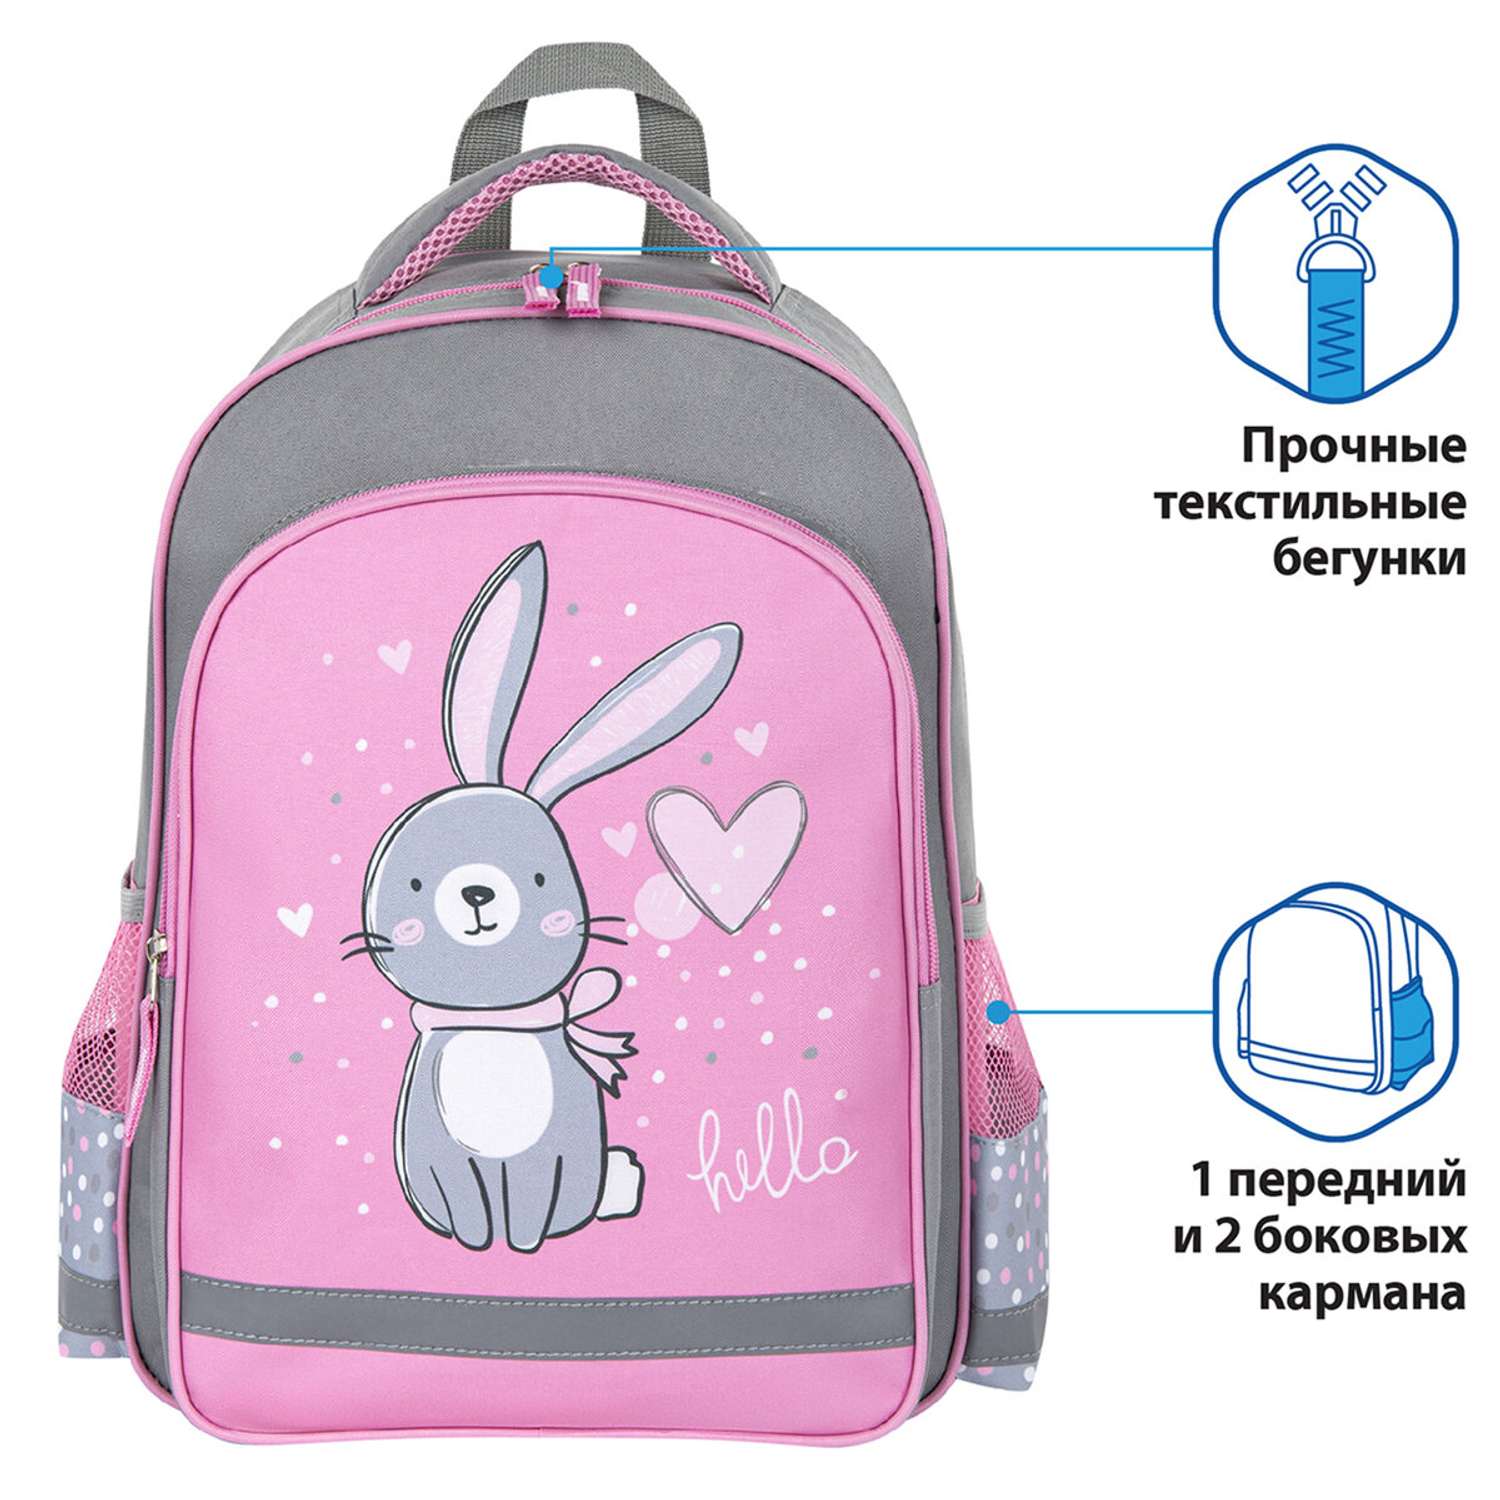 Рюкзак Пифагор школьный для девочки Adorable bunny - фото 2